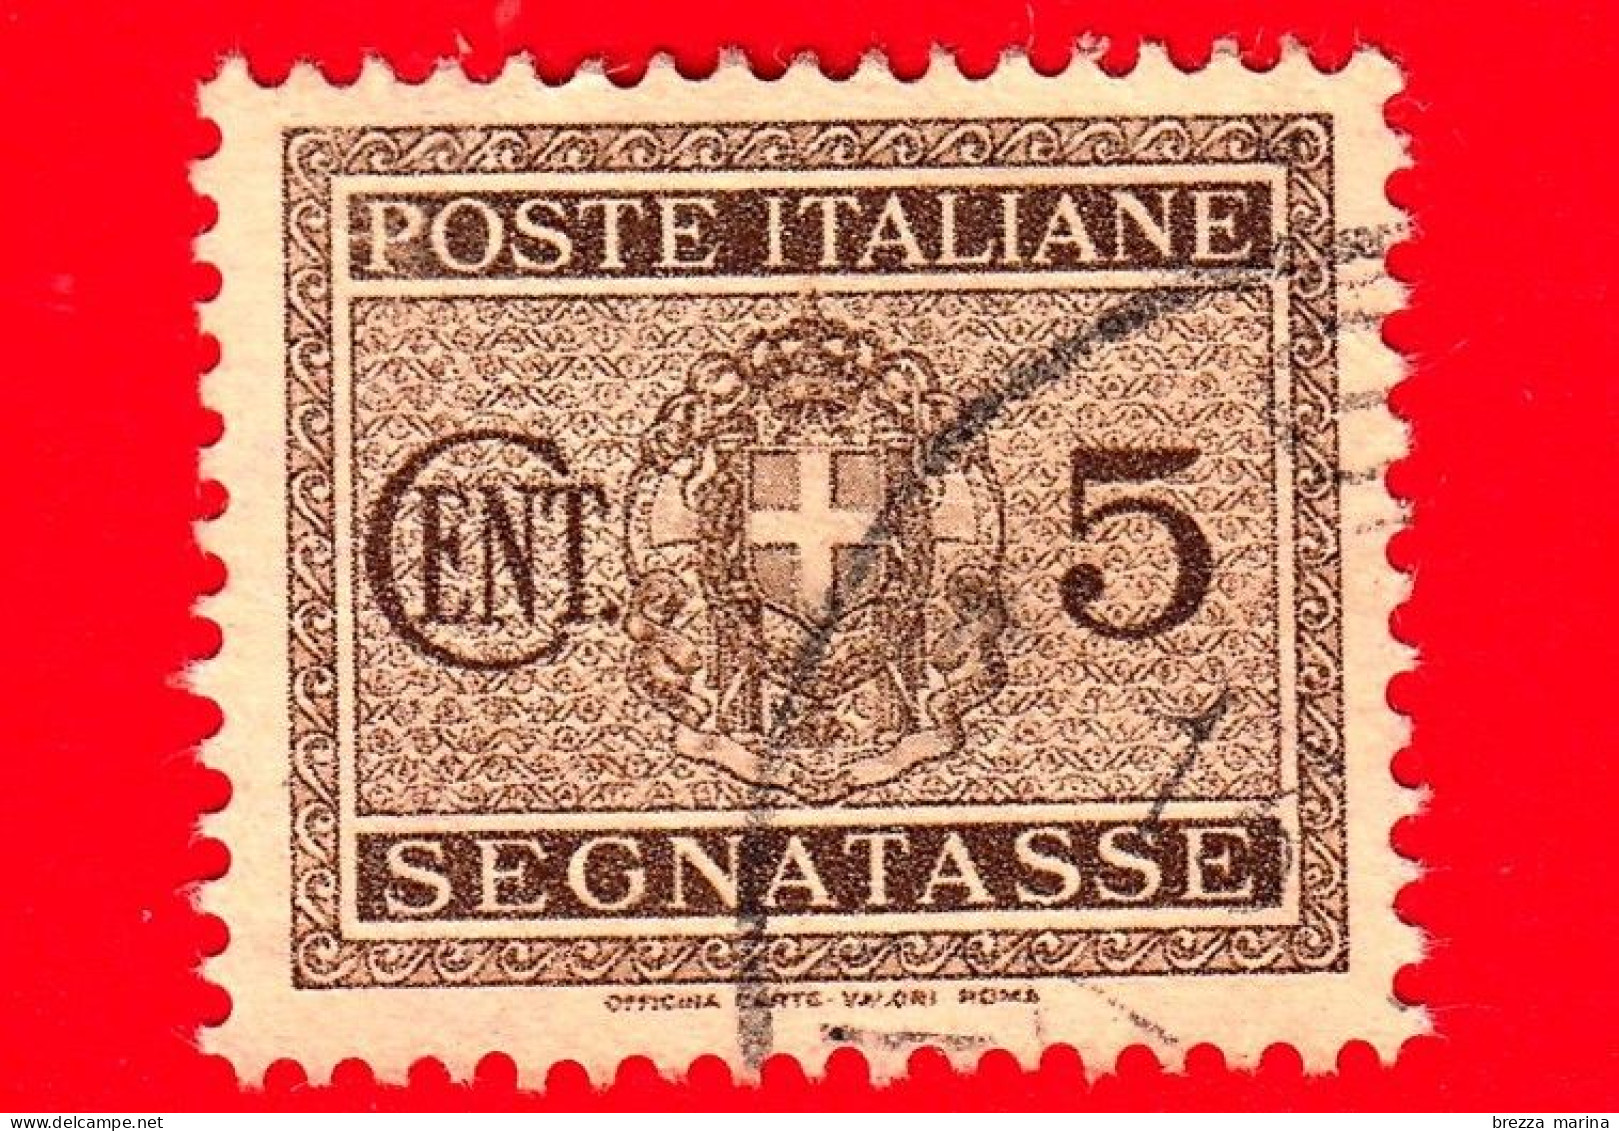 ITALIA - 1934 - Usato - Fascio Littorio - Segnatasse - Filigrana Corona - 5 C. - Segnatasse